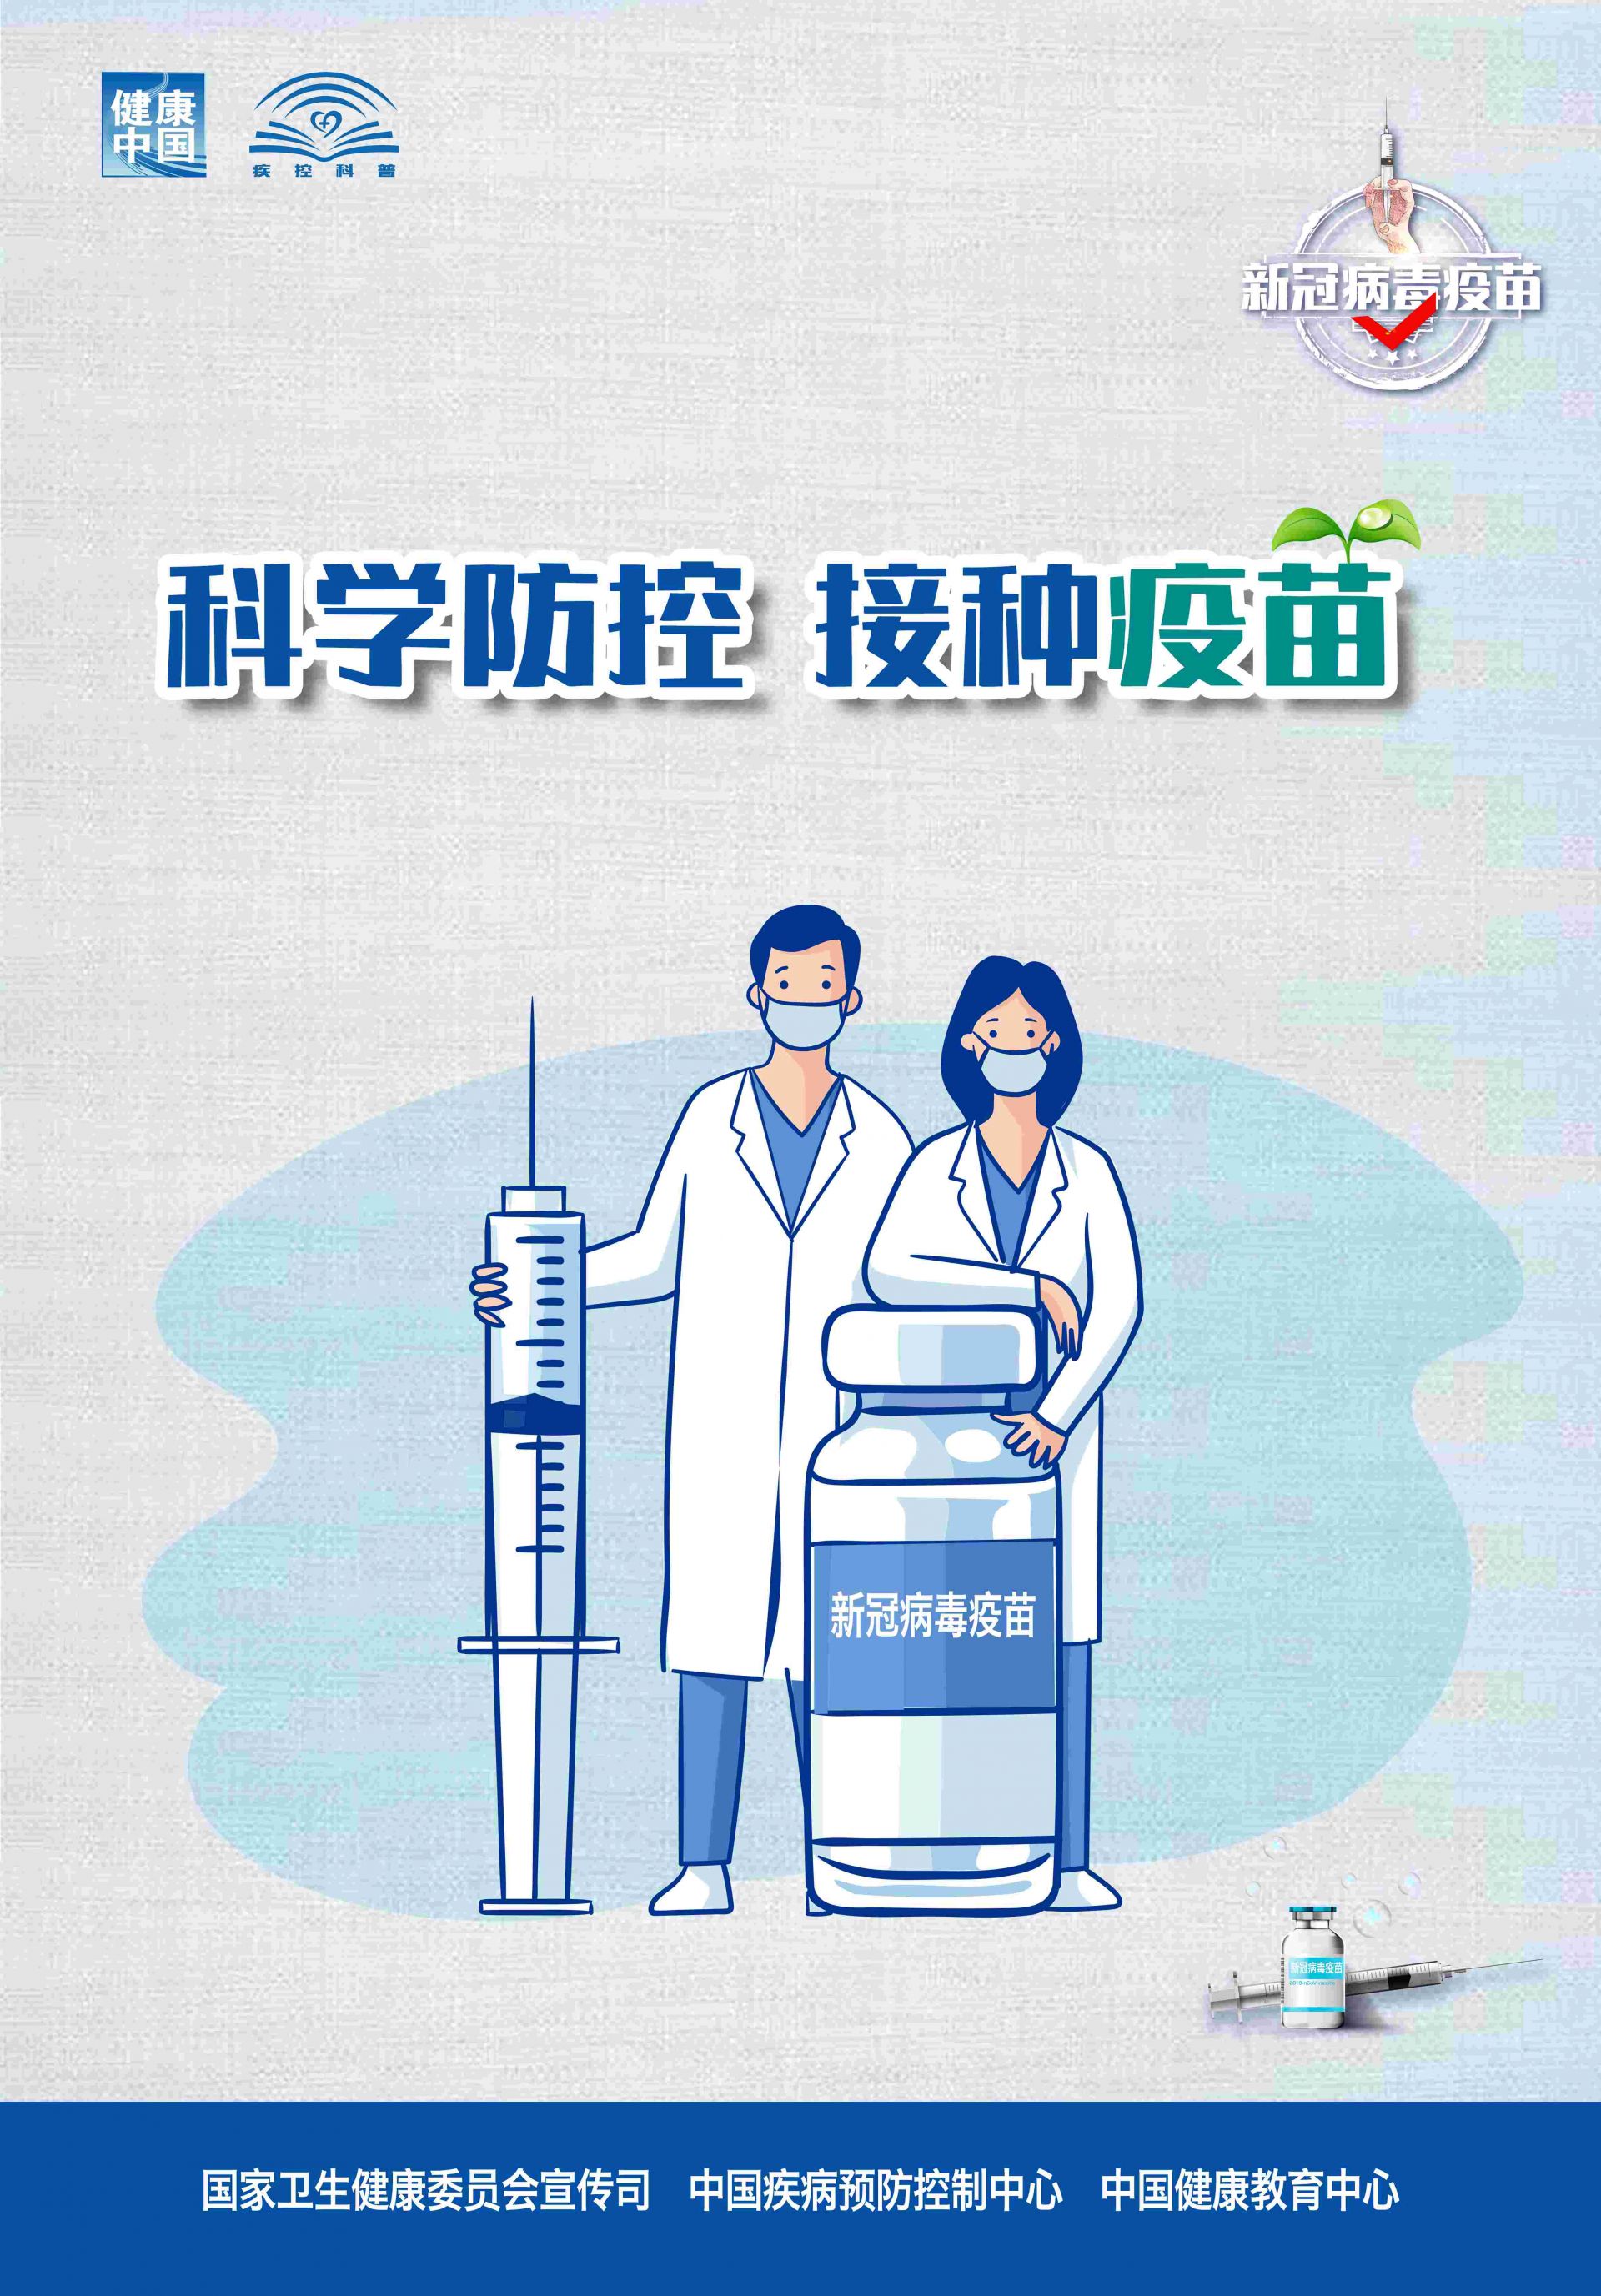 新冠肺炎疫苗宣传海报图片